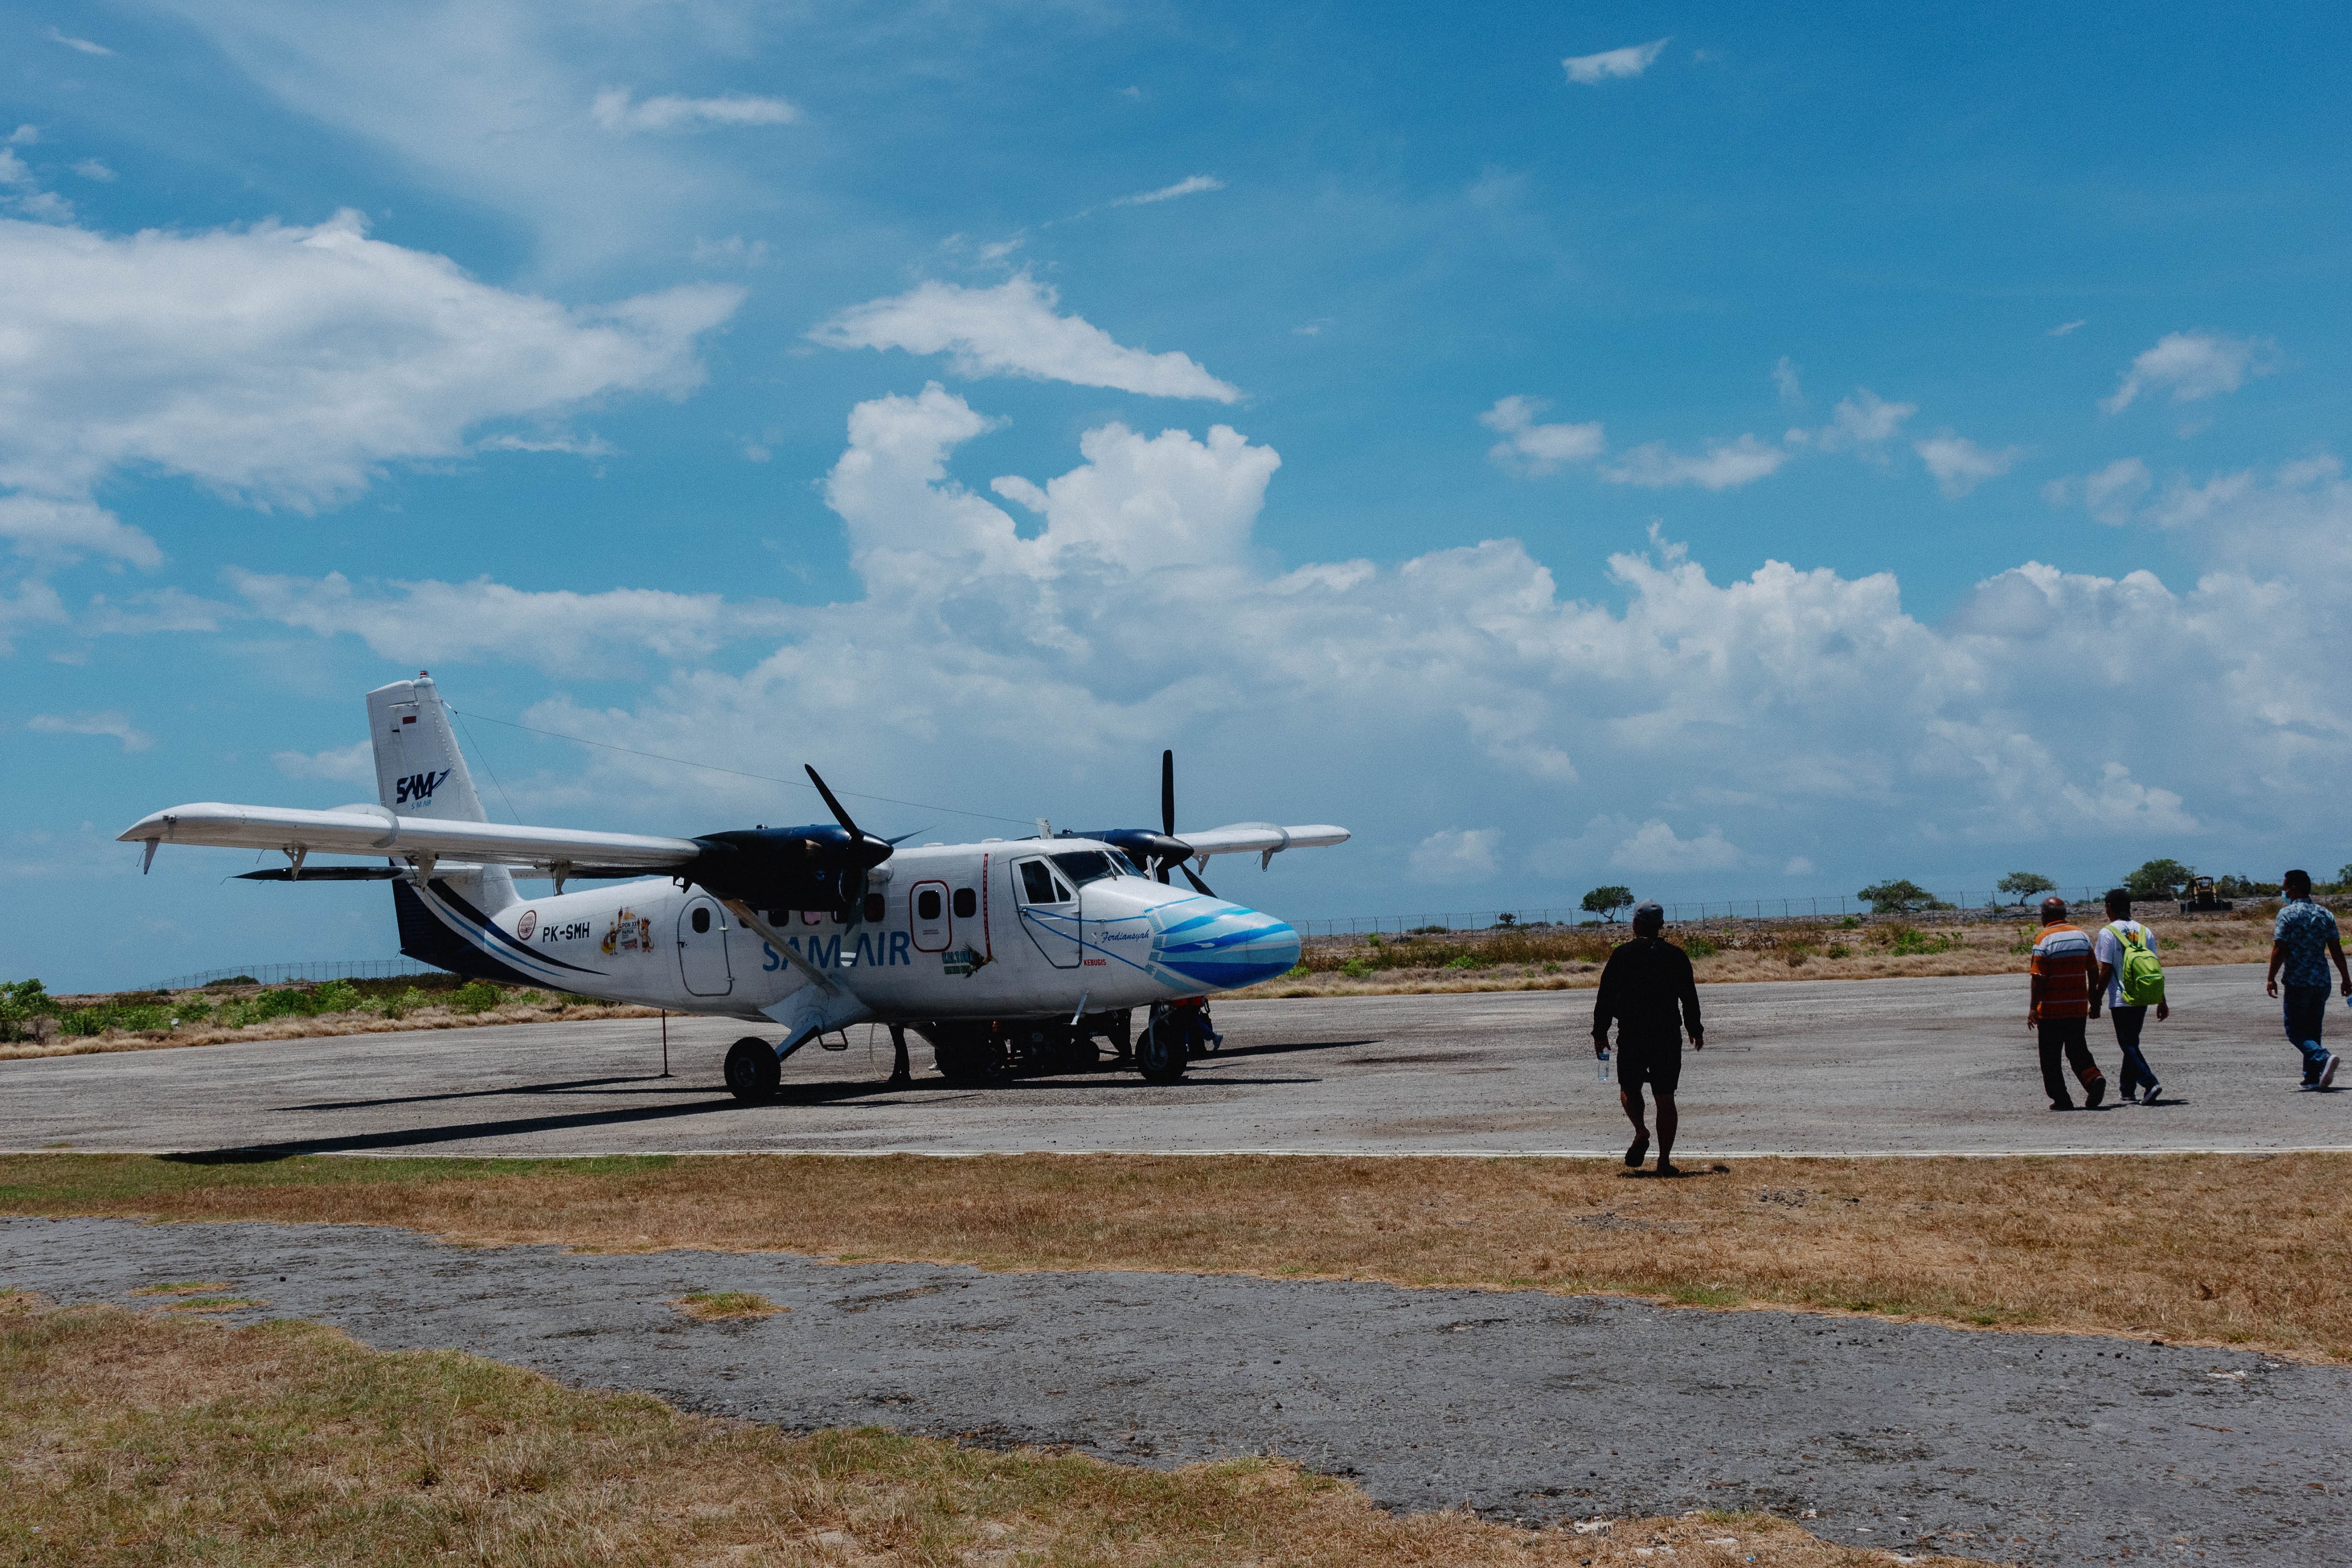  **Gambar 3.** Pesawat Sam Air yang melayani rute Kisar melalui Ambon.